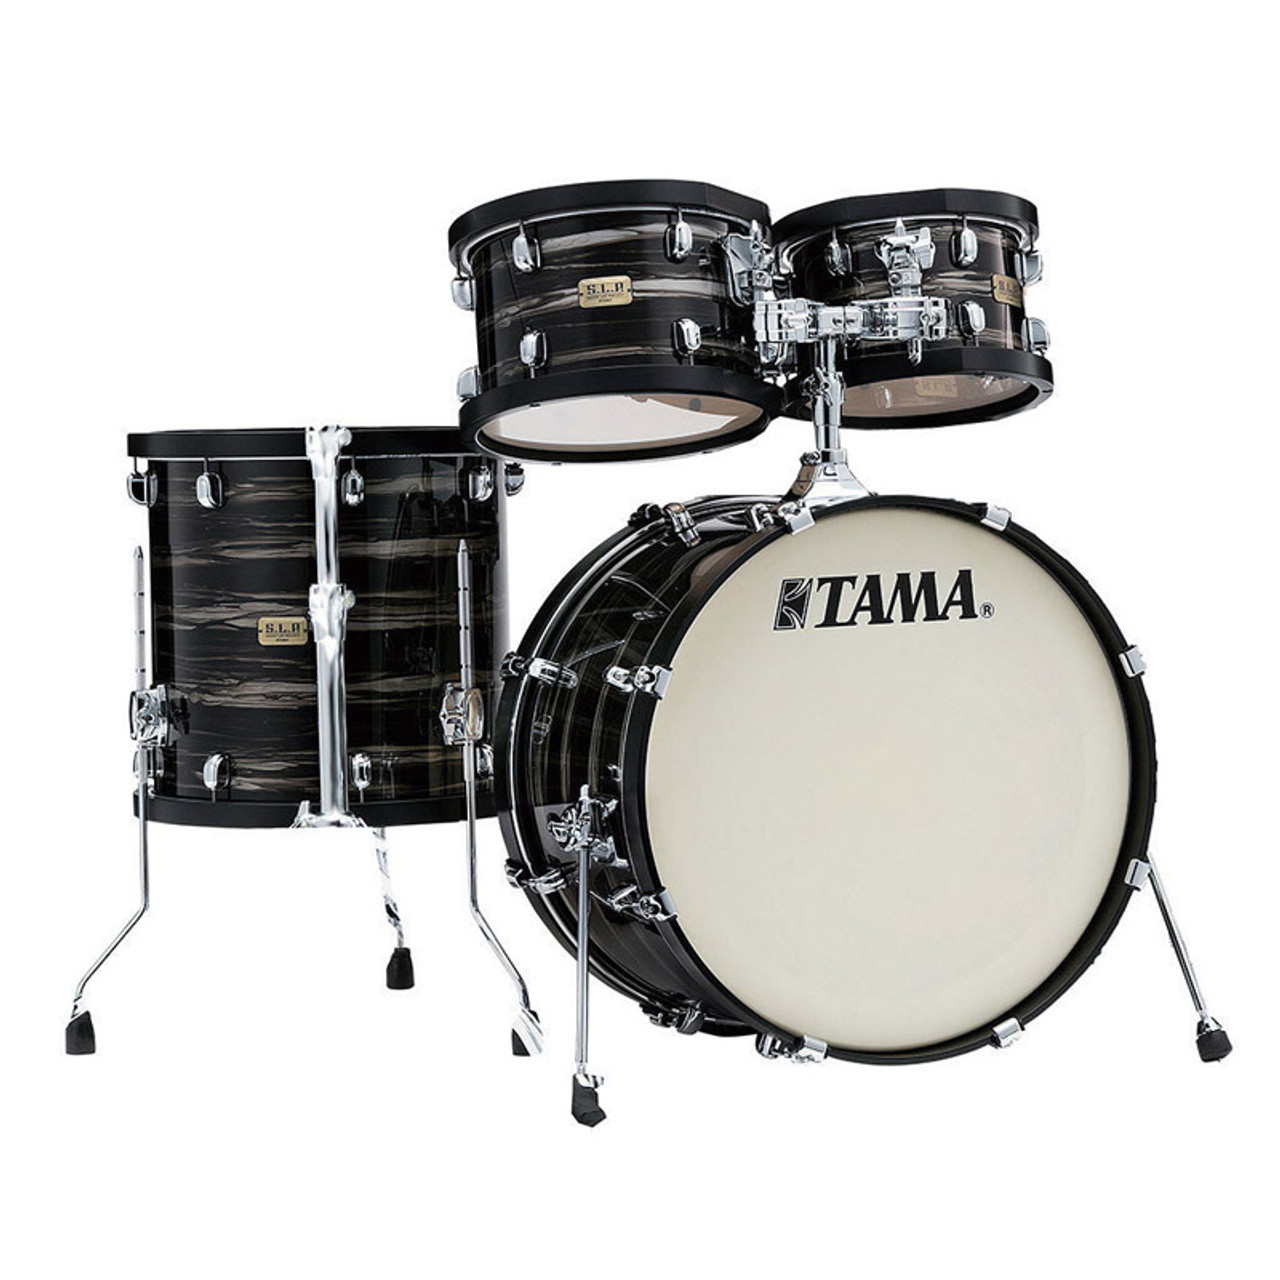 TAMA Drums  S.L.P. Drum Kits Big Black Steel -Limited Product